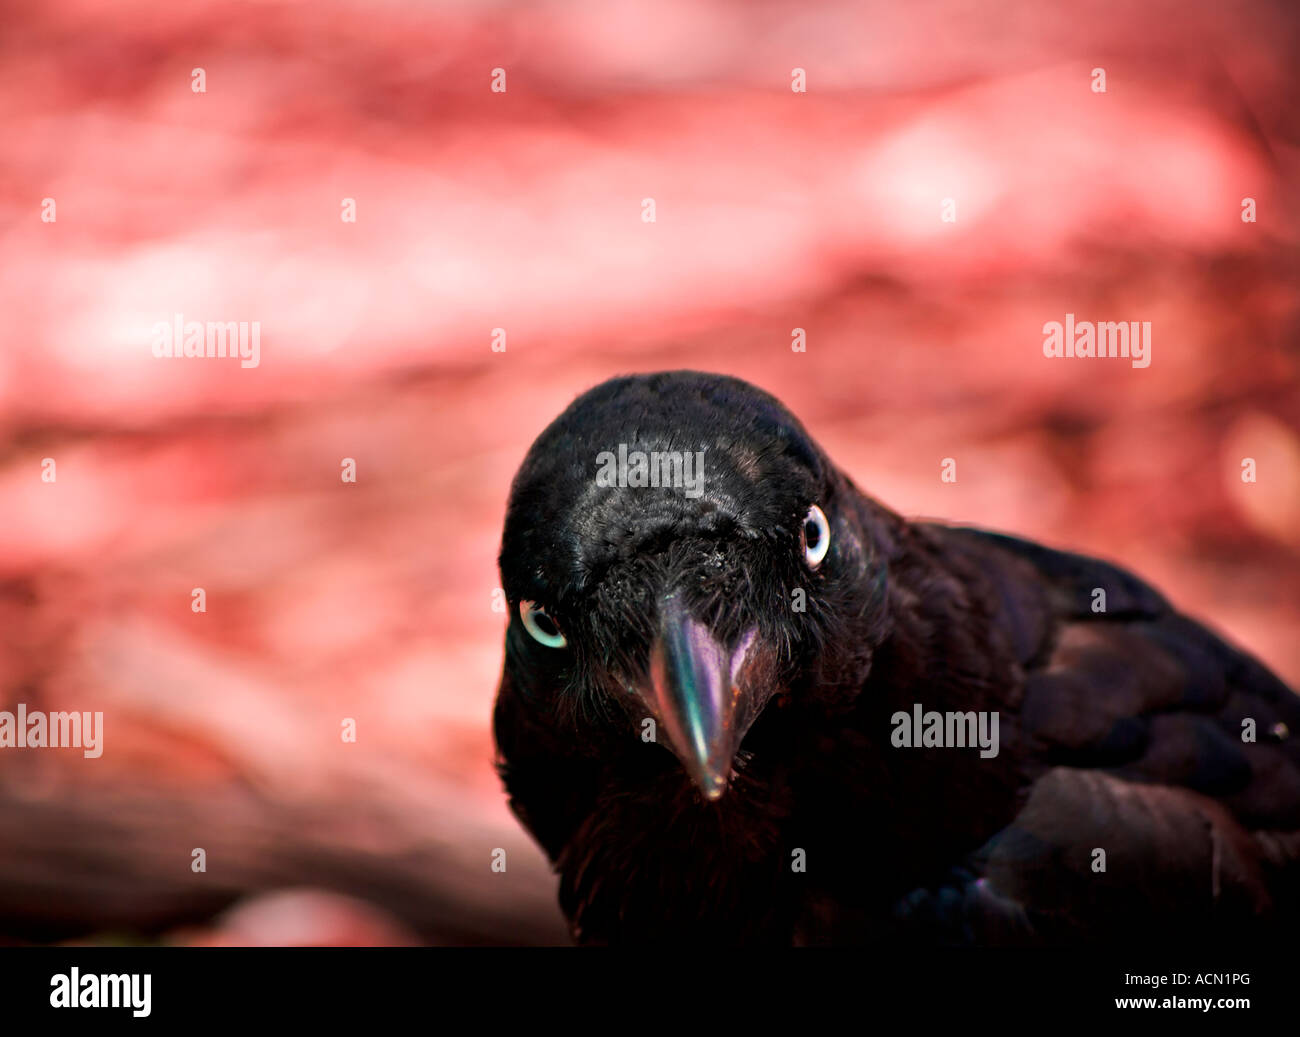 Un male cercando di crow australian raven sembra enquiringly nella fotocamera con un background infernale in rosso Foto Stock